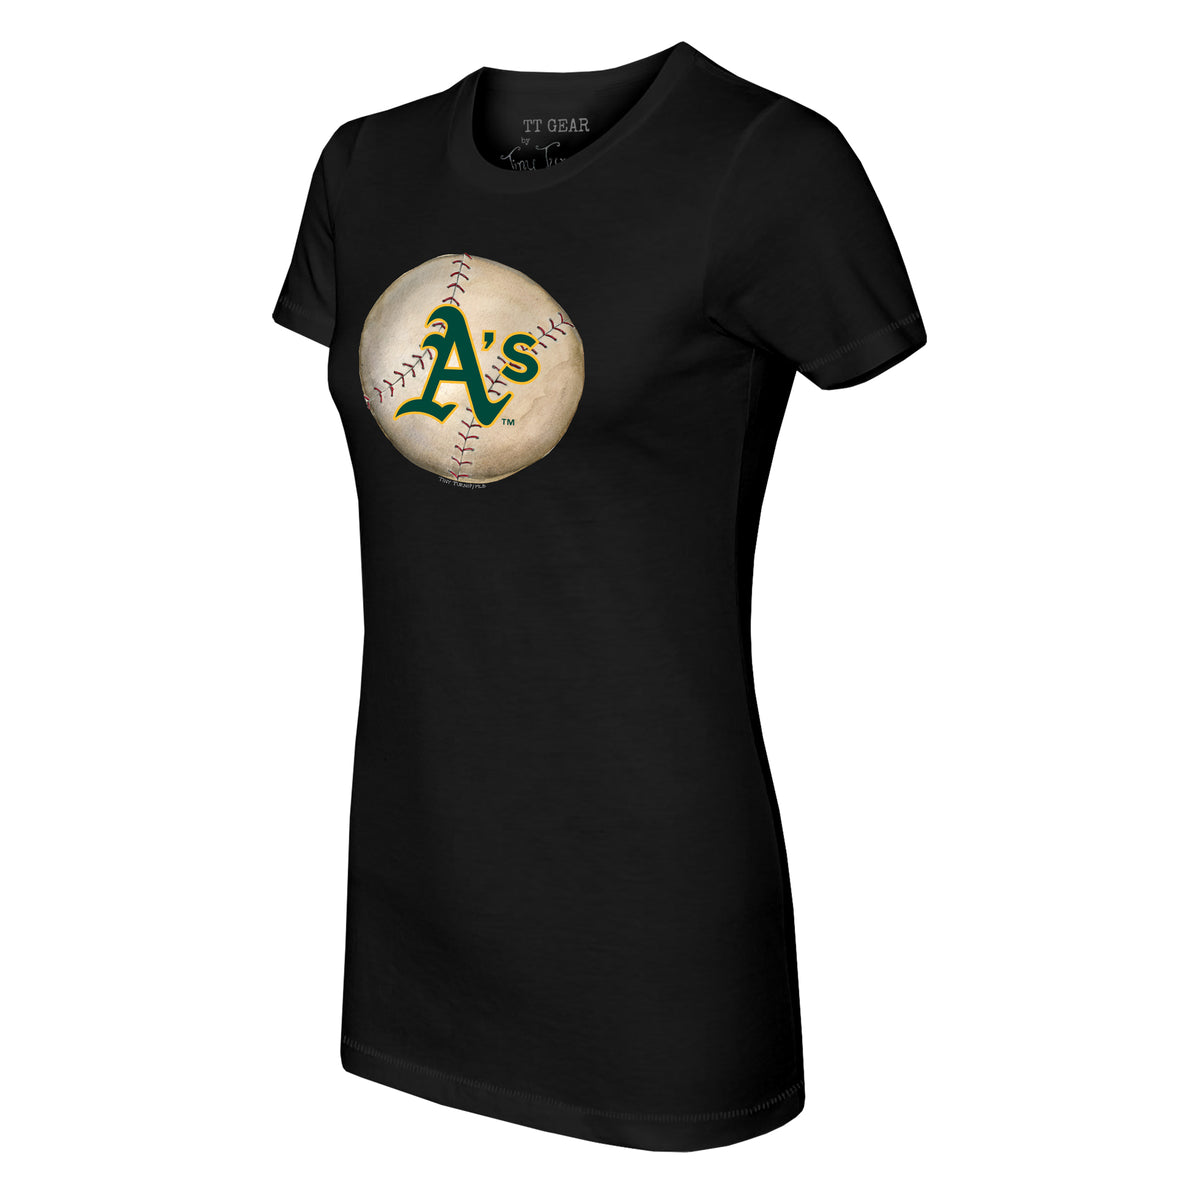 Oakland Athletics Blooming Baseballs Tee Shirt